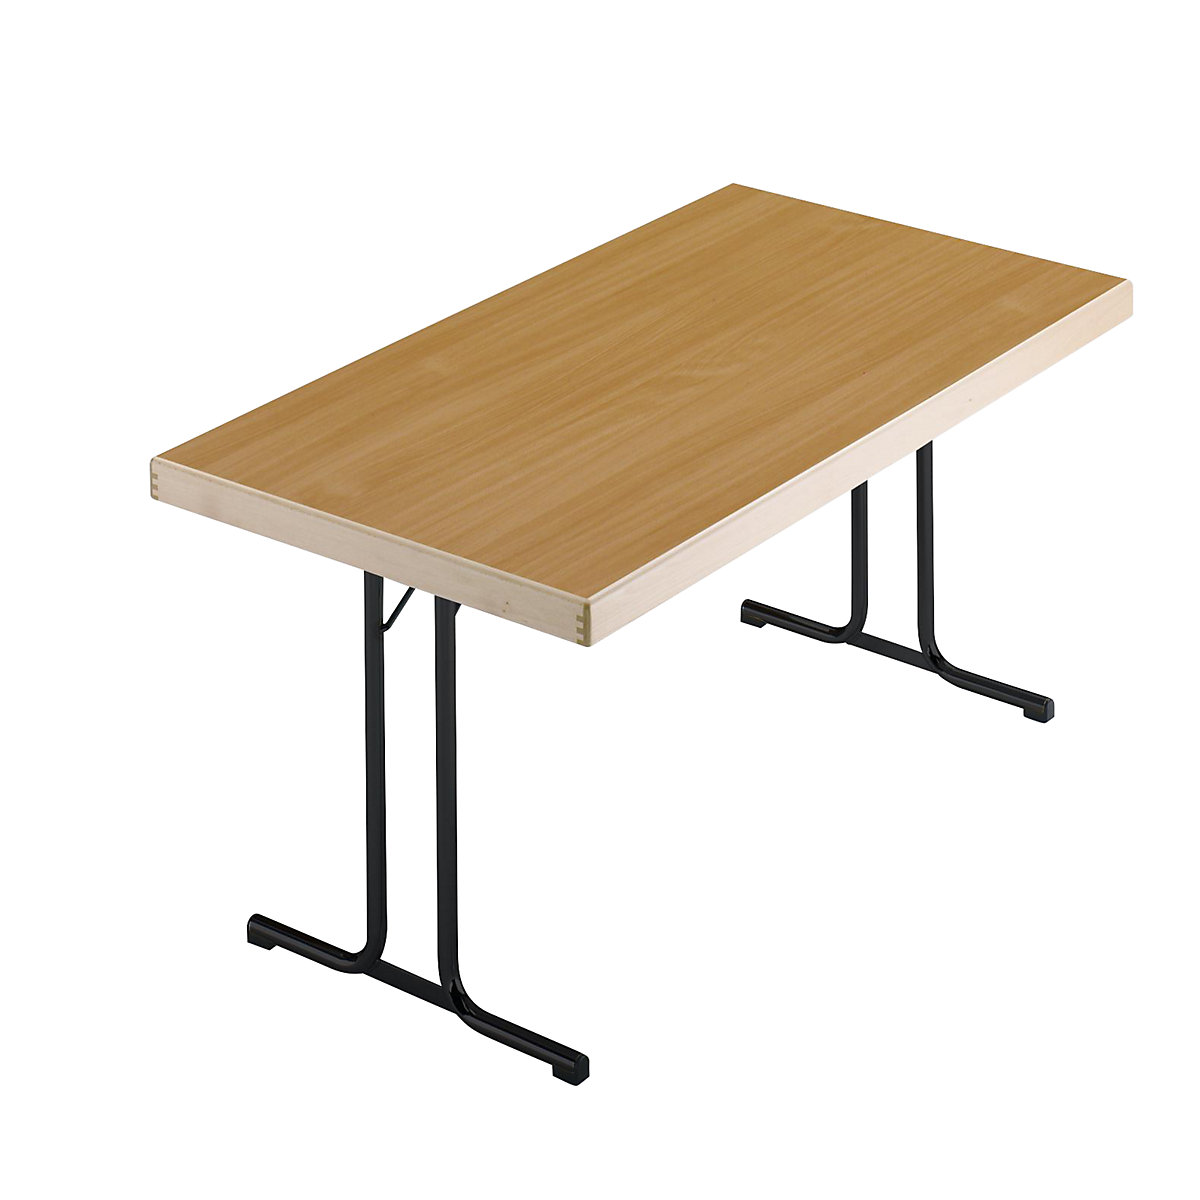 Sklápací stôl, podstavec s dvojitými nohami tvaru T, 1200 x 800 mm, podstavec antracitová, doska vzor buk-15